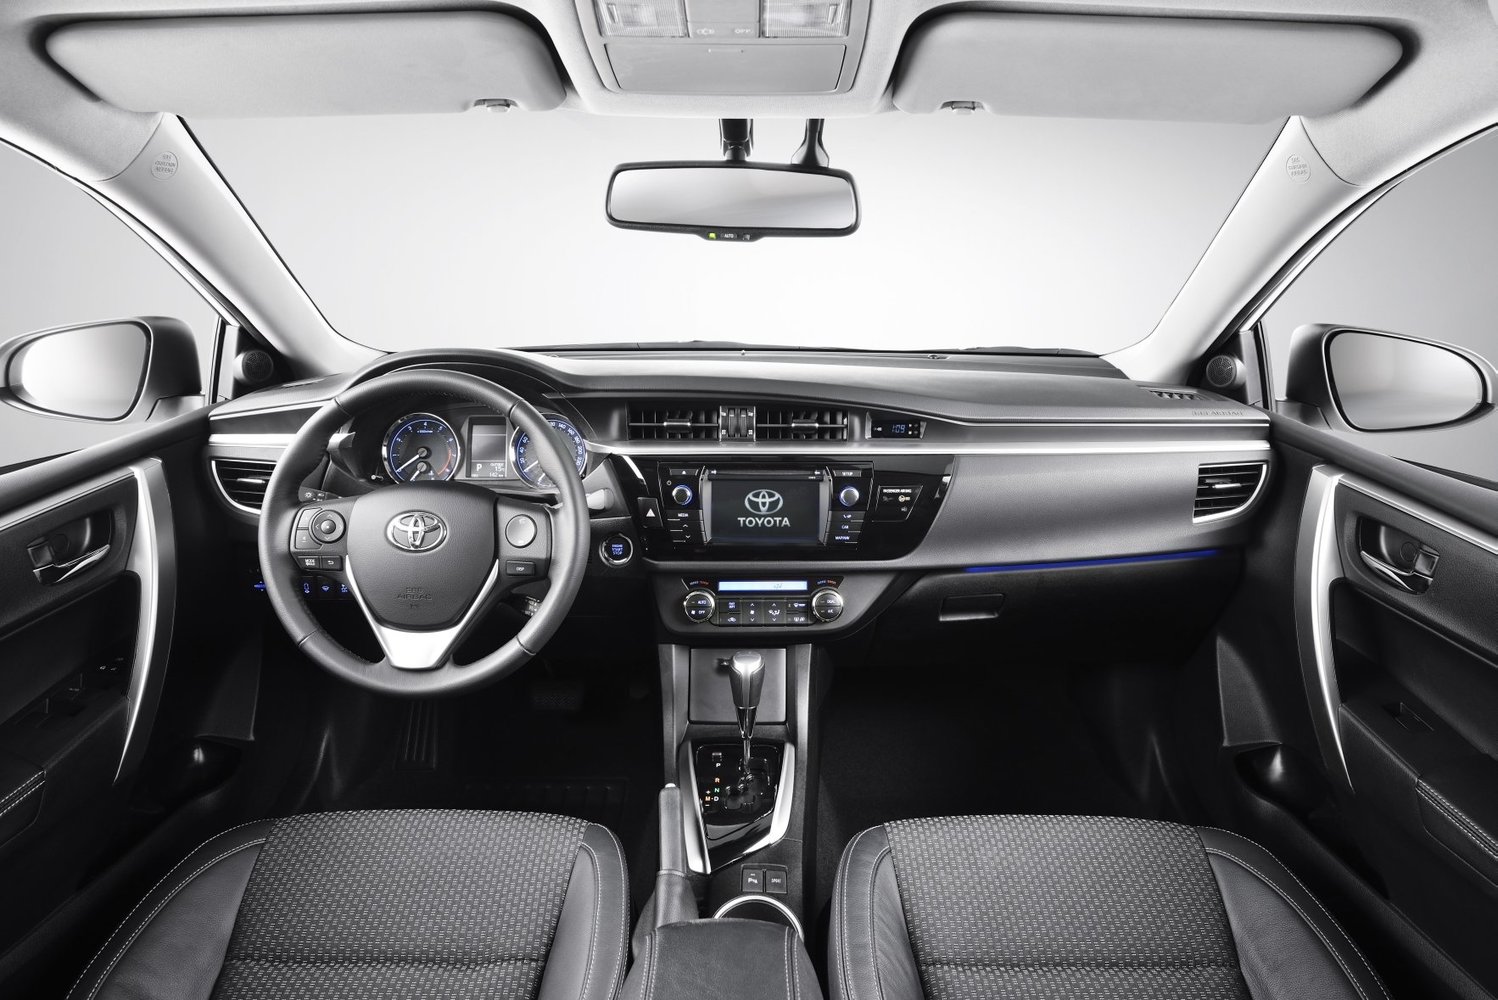 седан Toyota Corolla 2013 - 2016г выпуска модификация 1.4 MT (90 л.с.)